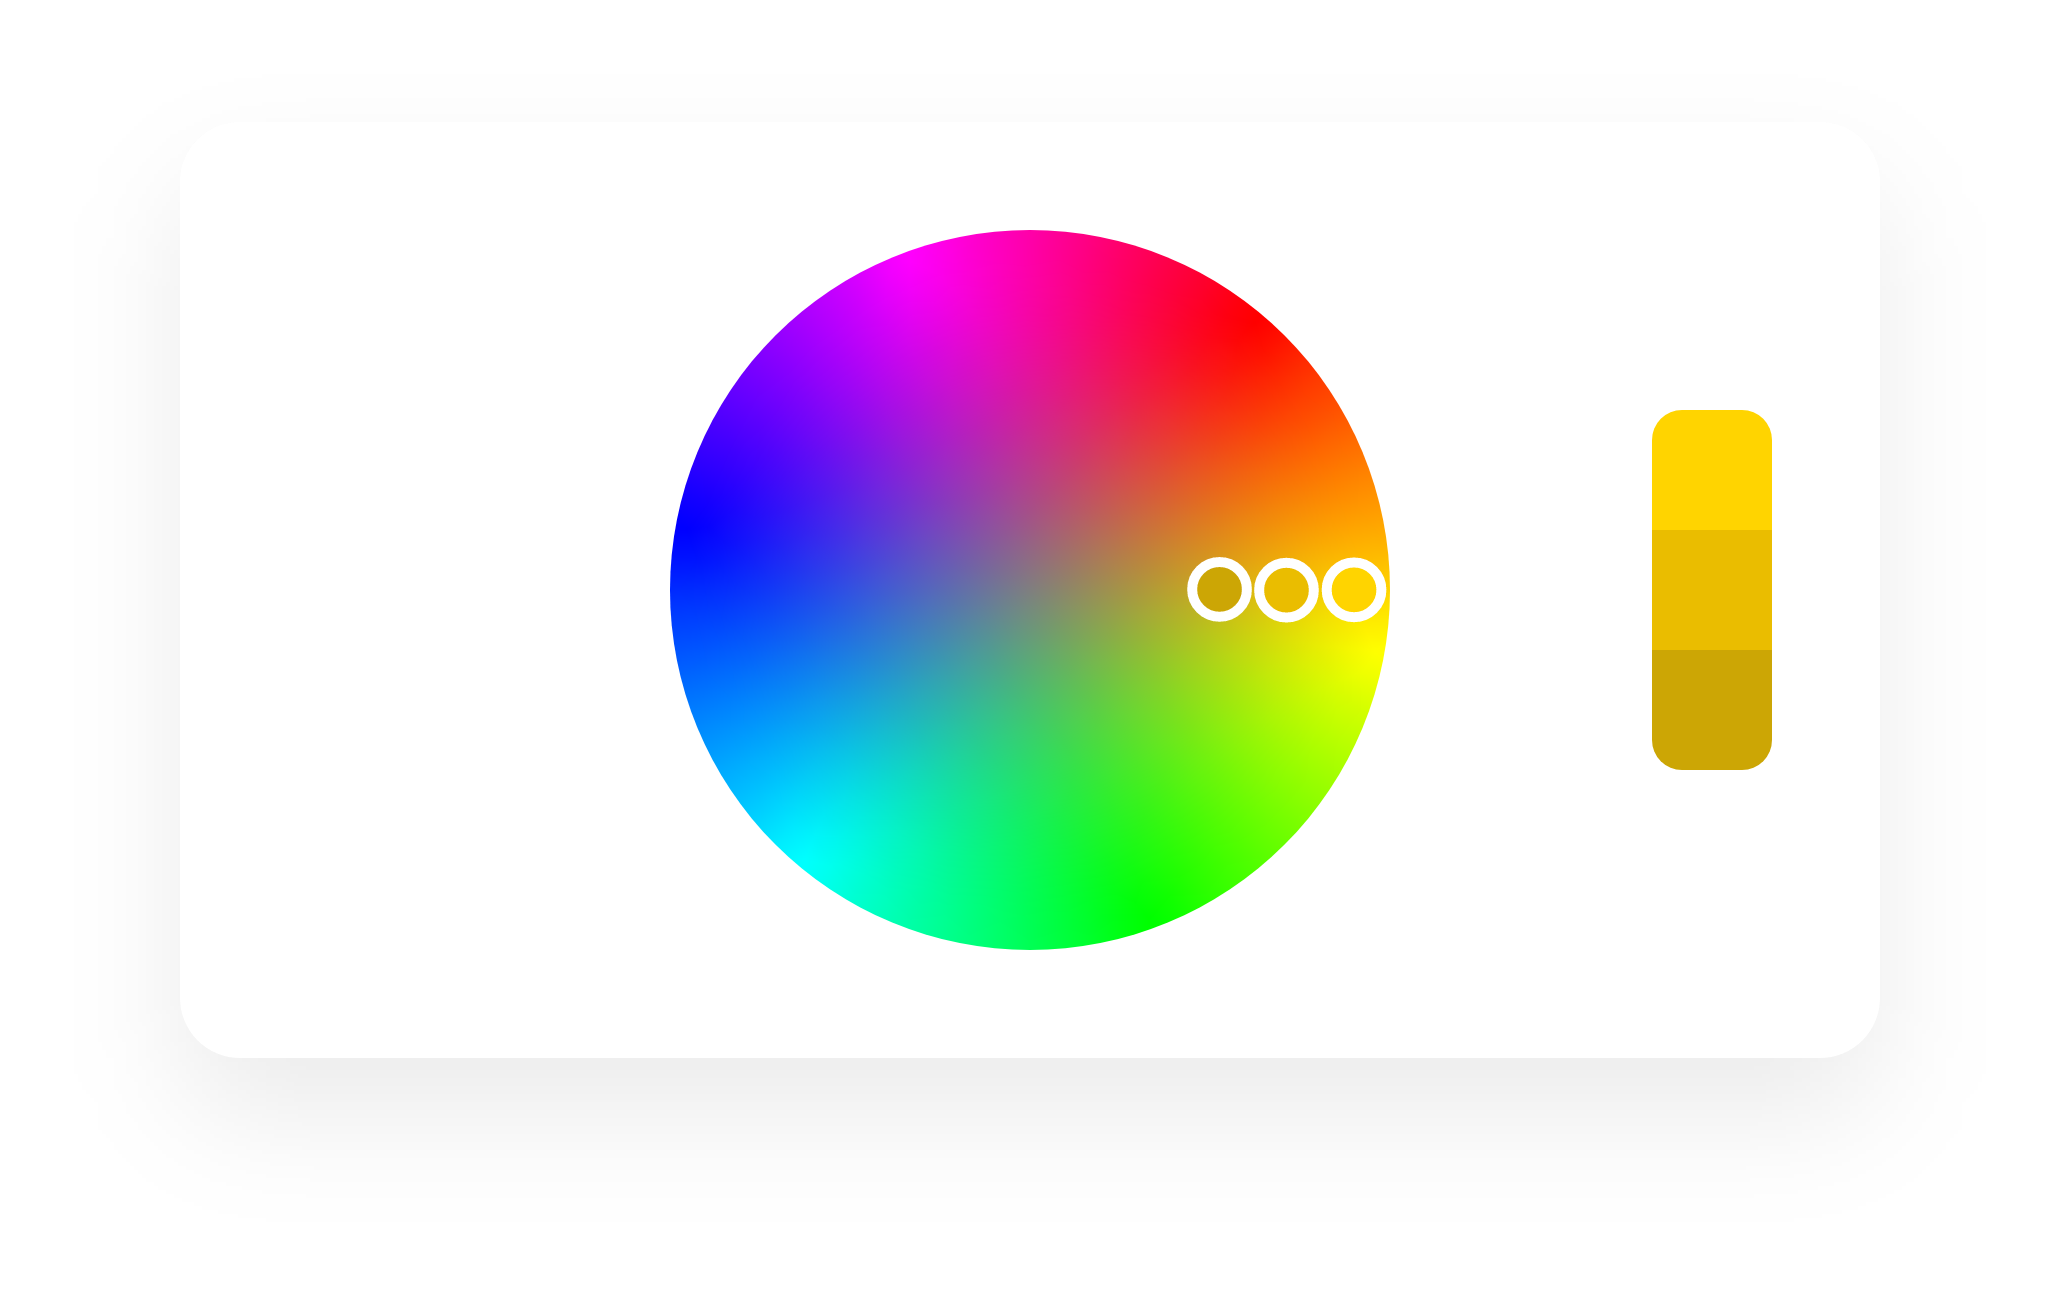 triadic color wheel